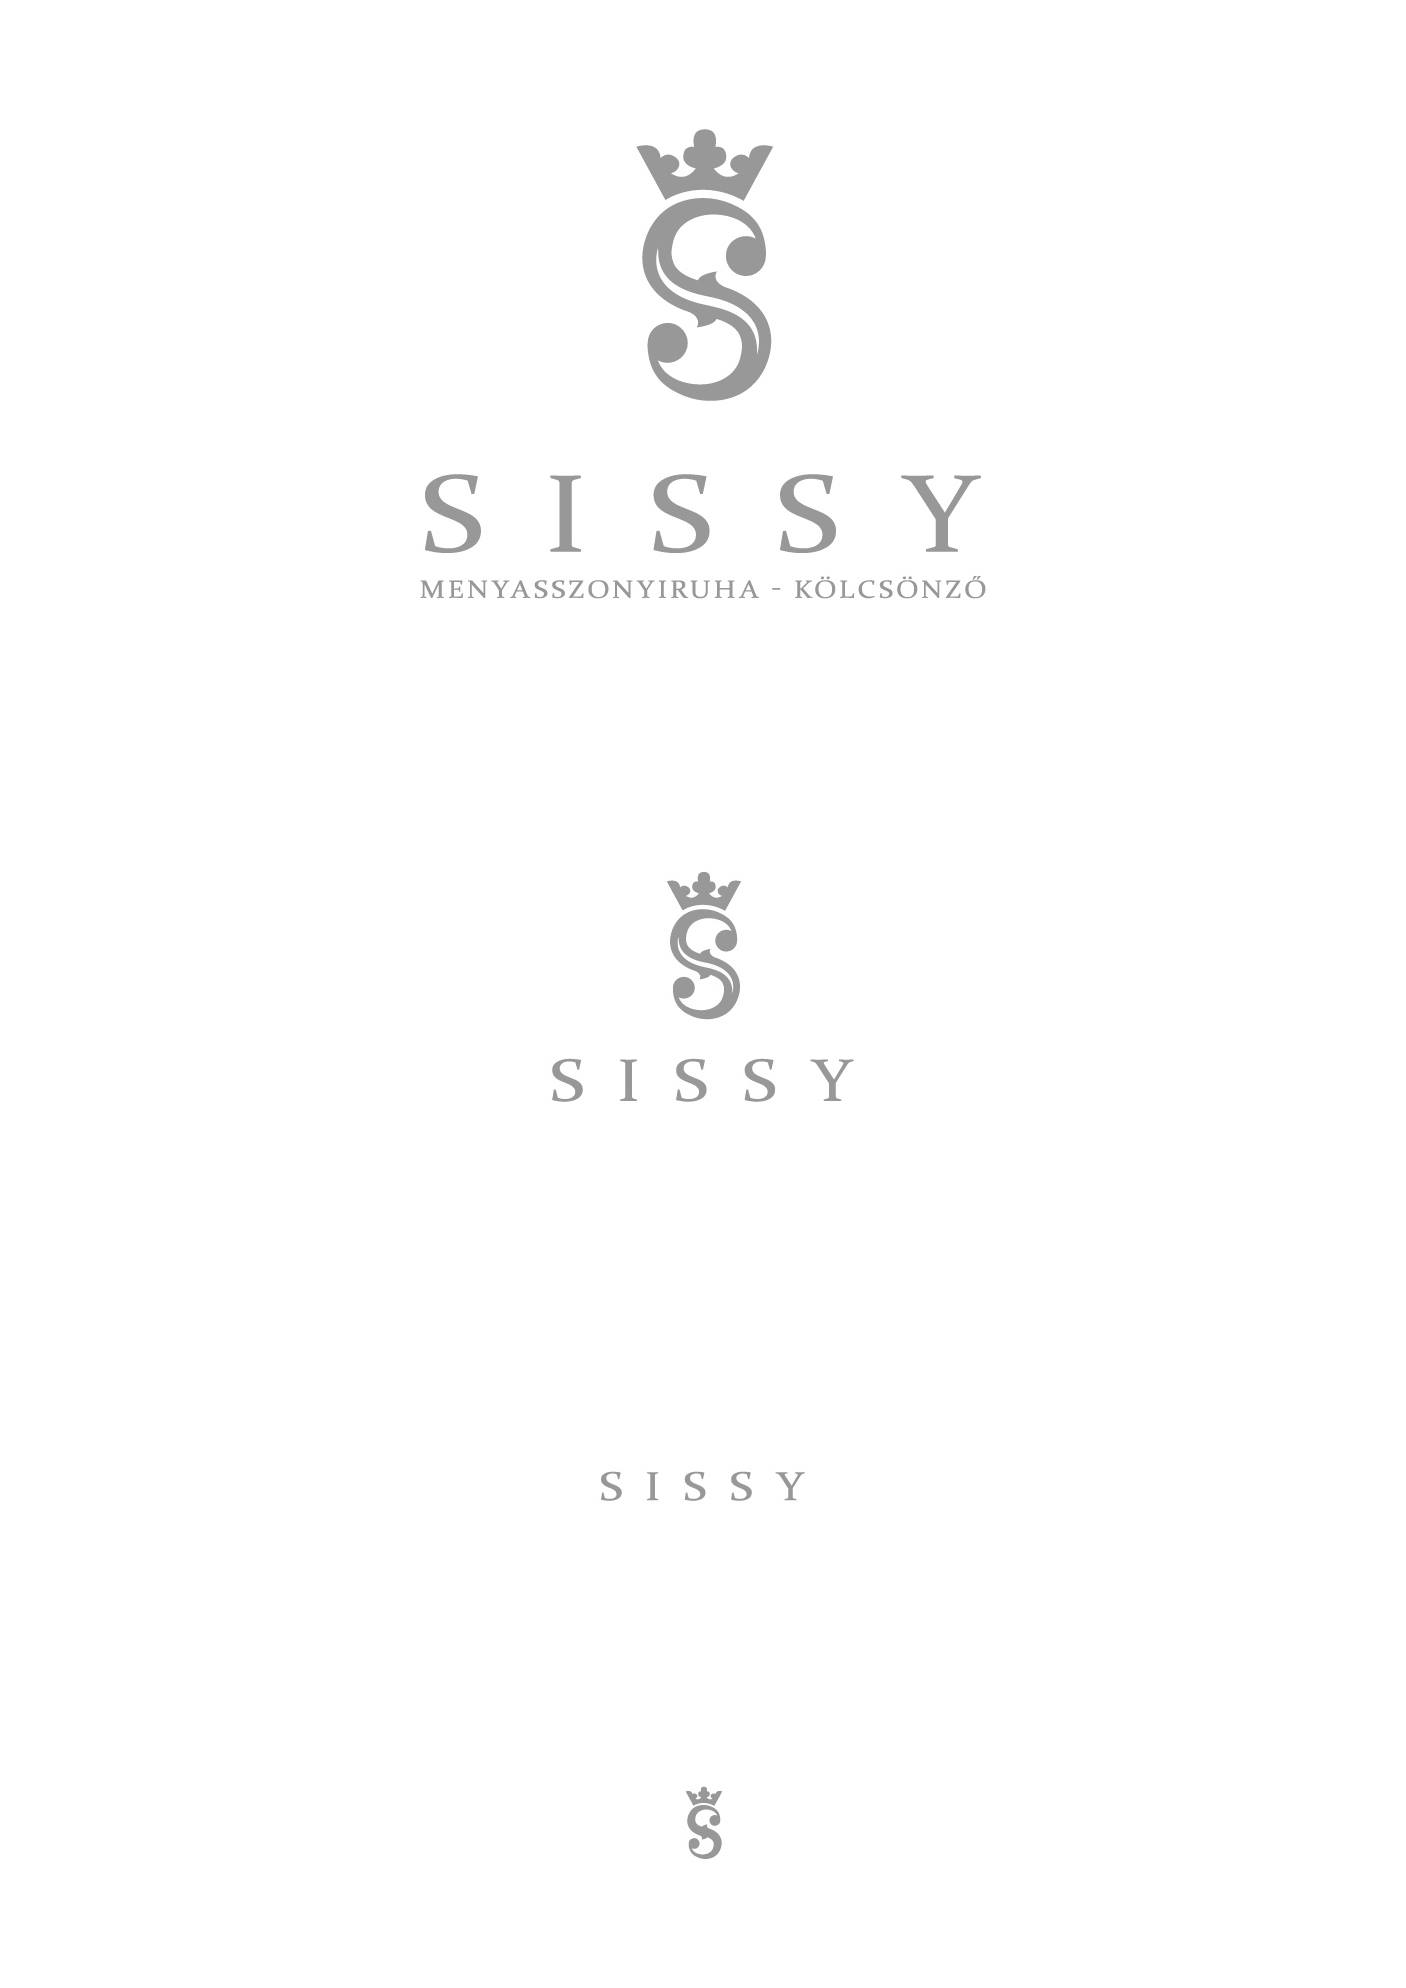 Sissy reszponziv logo